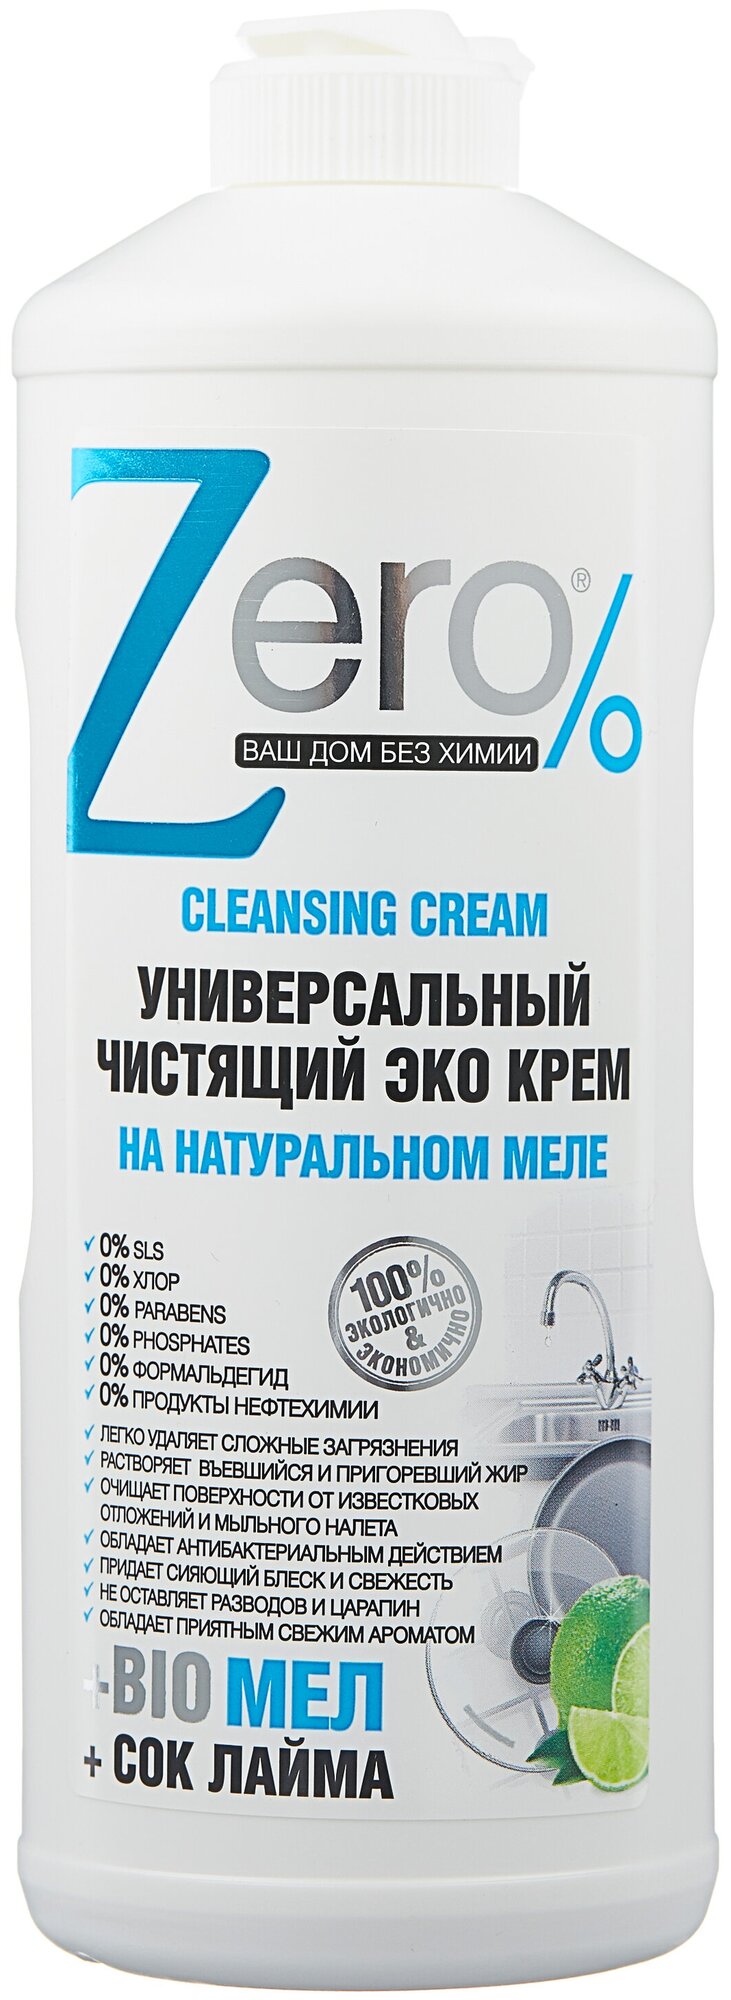 Универсальный чистящий эко крем на натуральном меле с соком лайма Zero% 500 мл